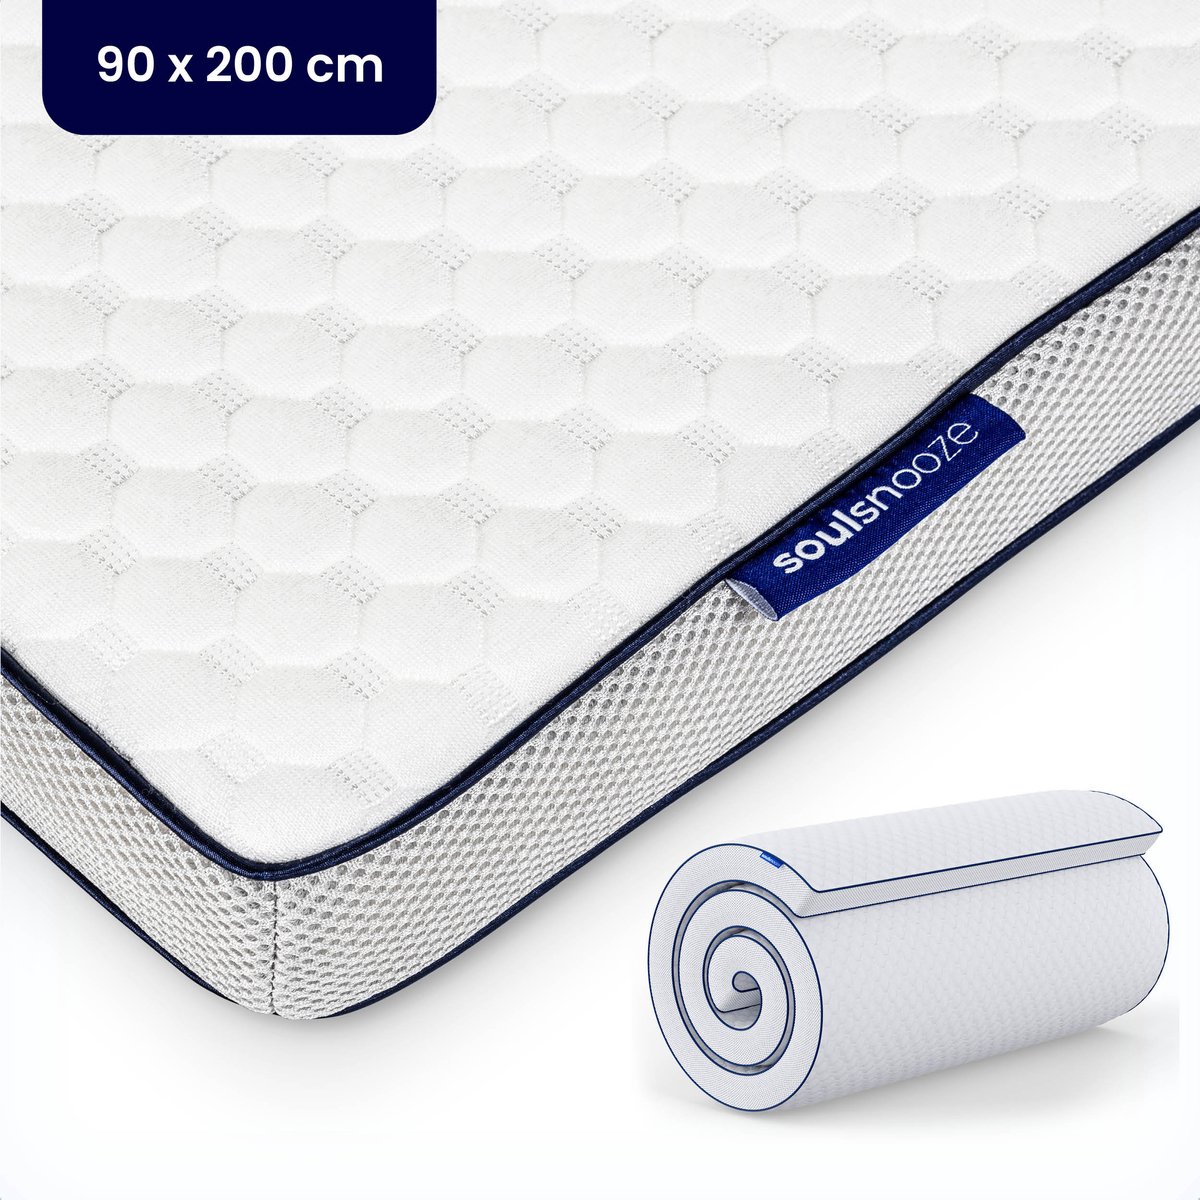 Soulsnooze® - DuoComfort Premium Topper 90x200 cm - Topdekmatras - Aanpasbaar Design - 3D Air Mesh - Traagschuim - Memory Foam Matras - 30 Nachten Proefslapen - Wasbare Hoes - Anti Allergie